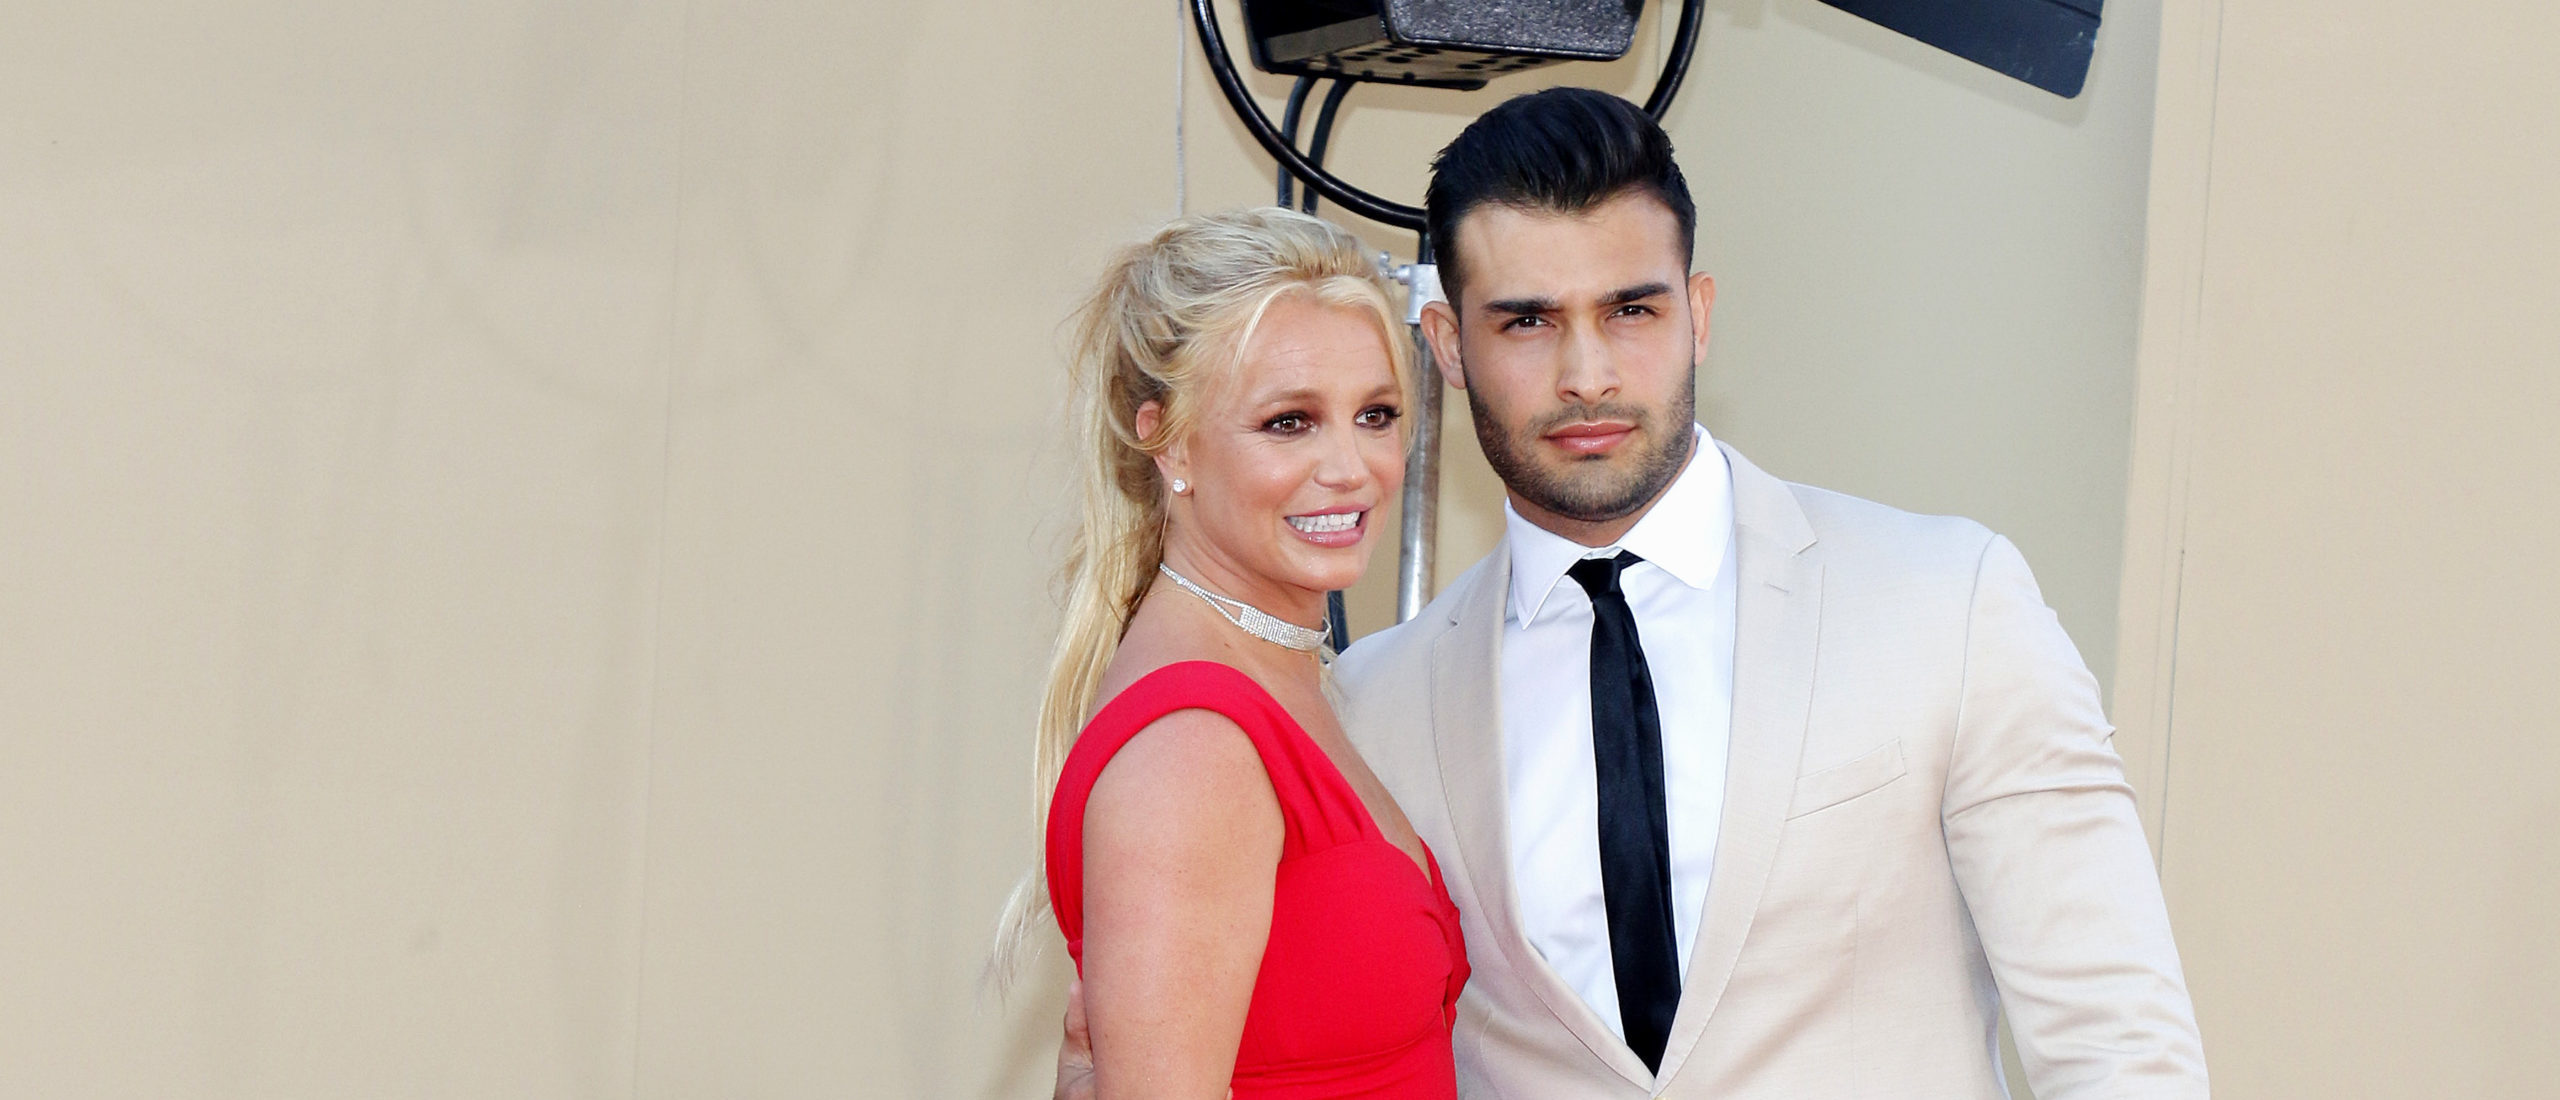 Britney Spears comparte devastadoras noticias familiares: ‘Hemos perdido nuestro milagro’